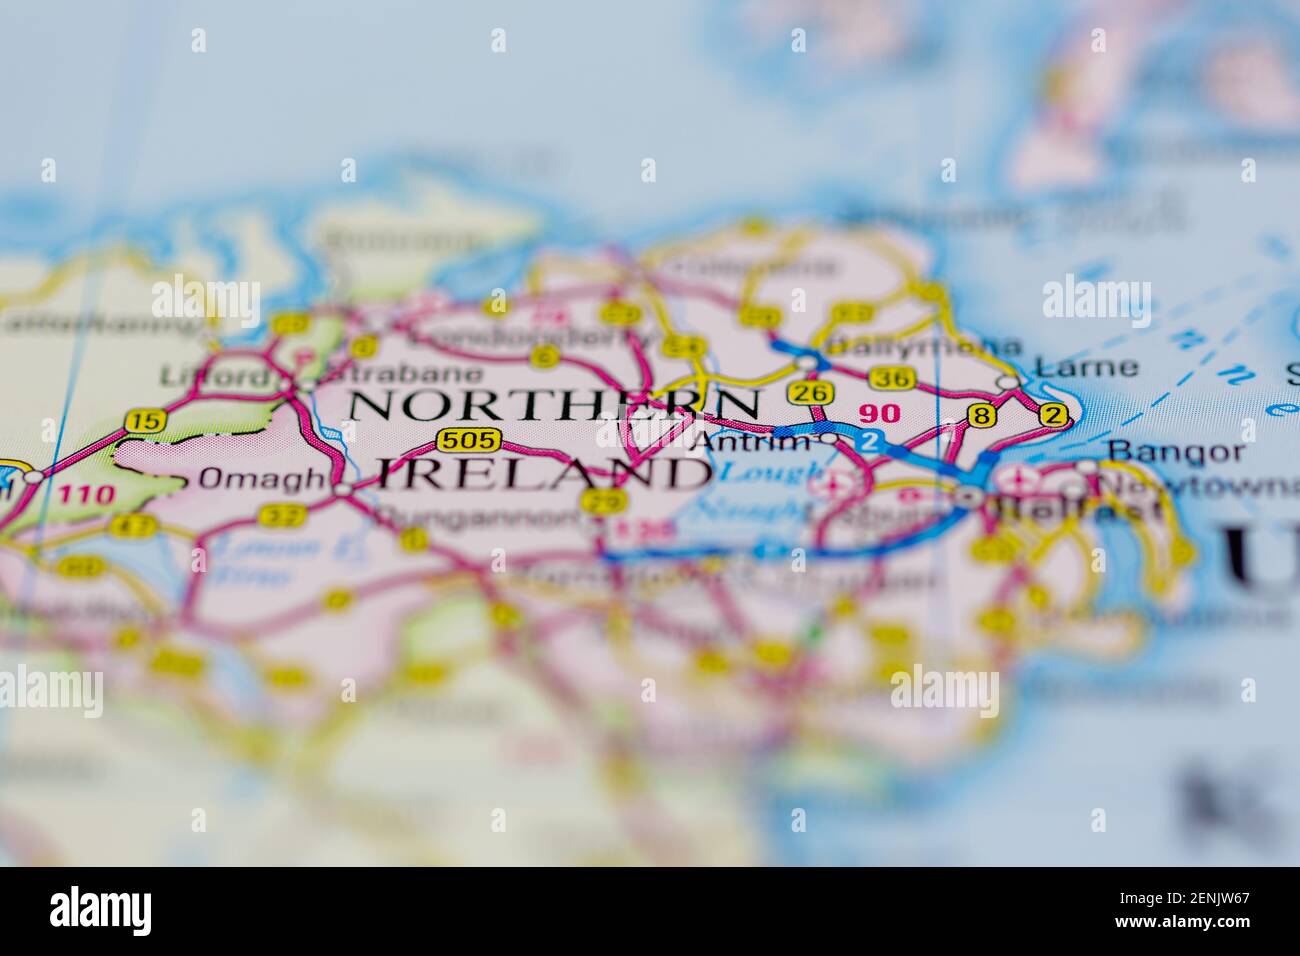 Nordirland wird auf einer Straßenkarte oder einem geografischen Gebiet angezeigt Karte Stockfoto